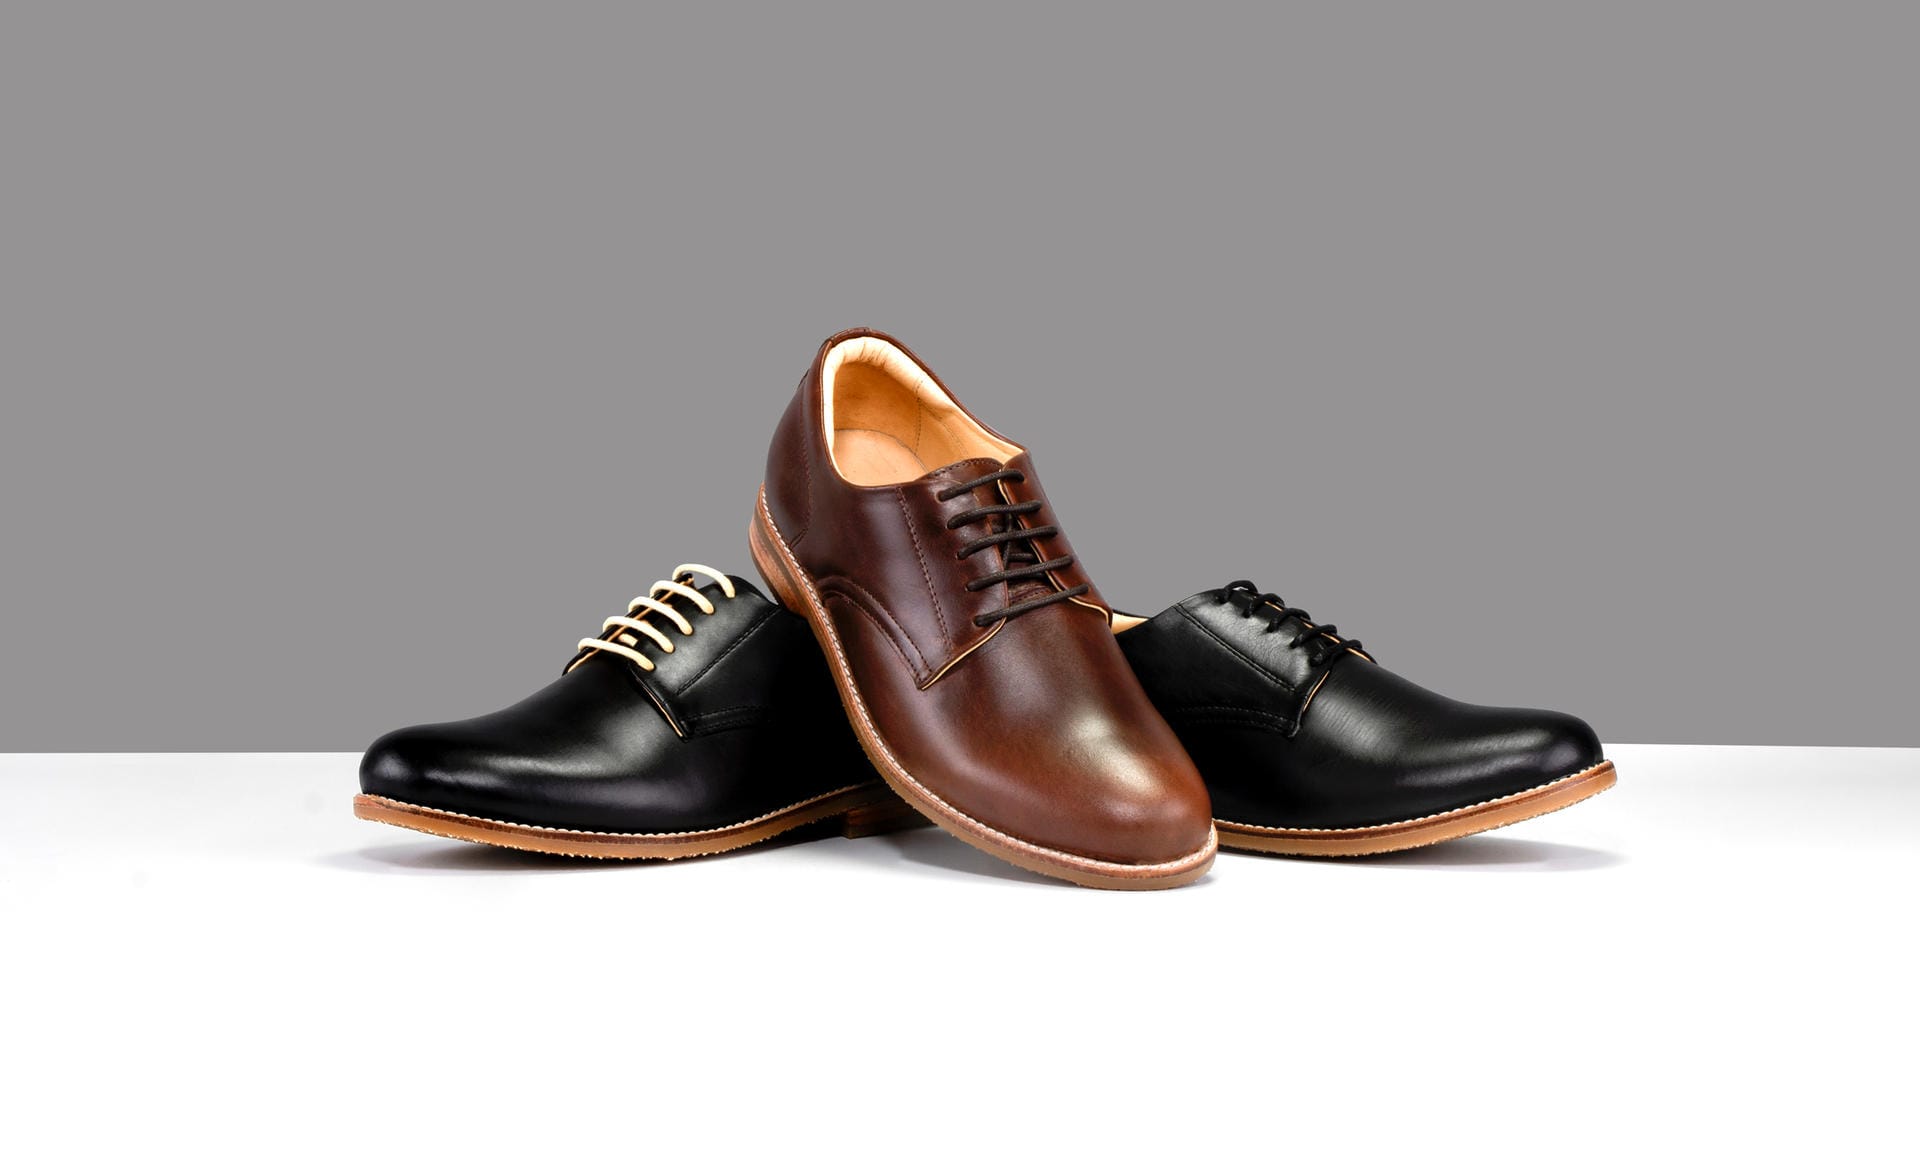 Bei eleganten Schuhen mit wenigen Ösen, passt die Parallelbindung.